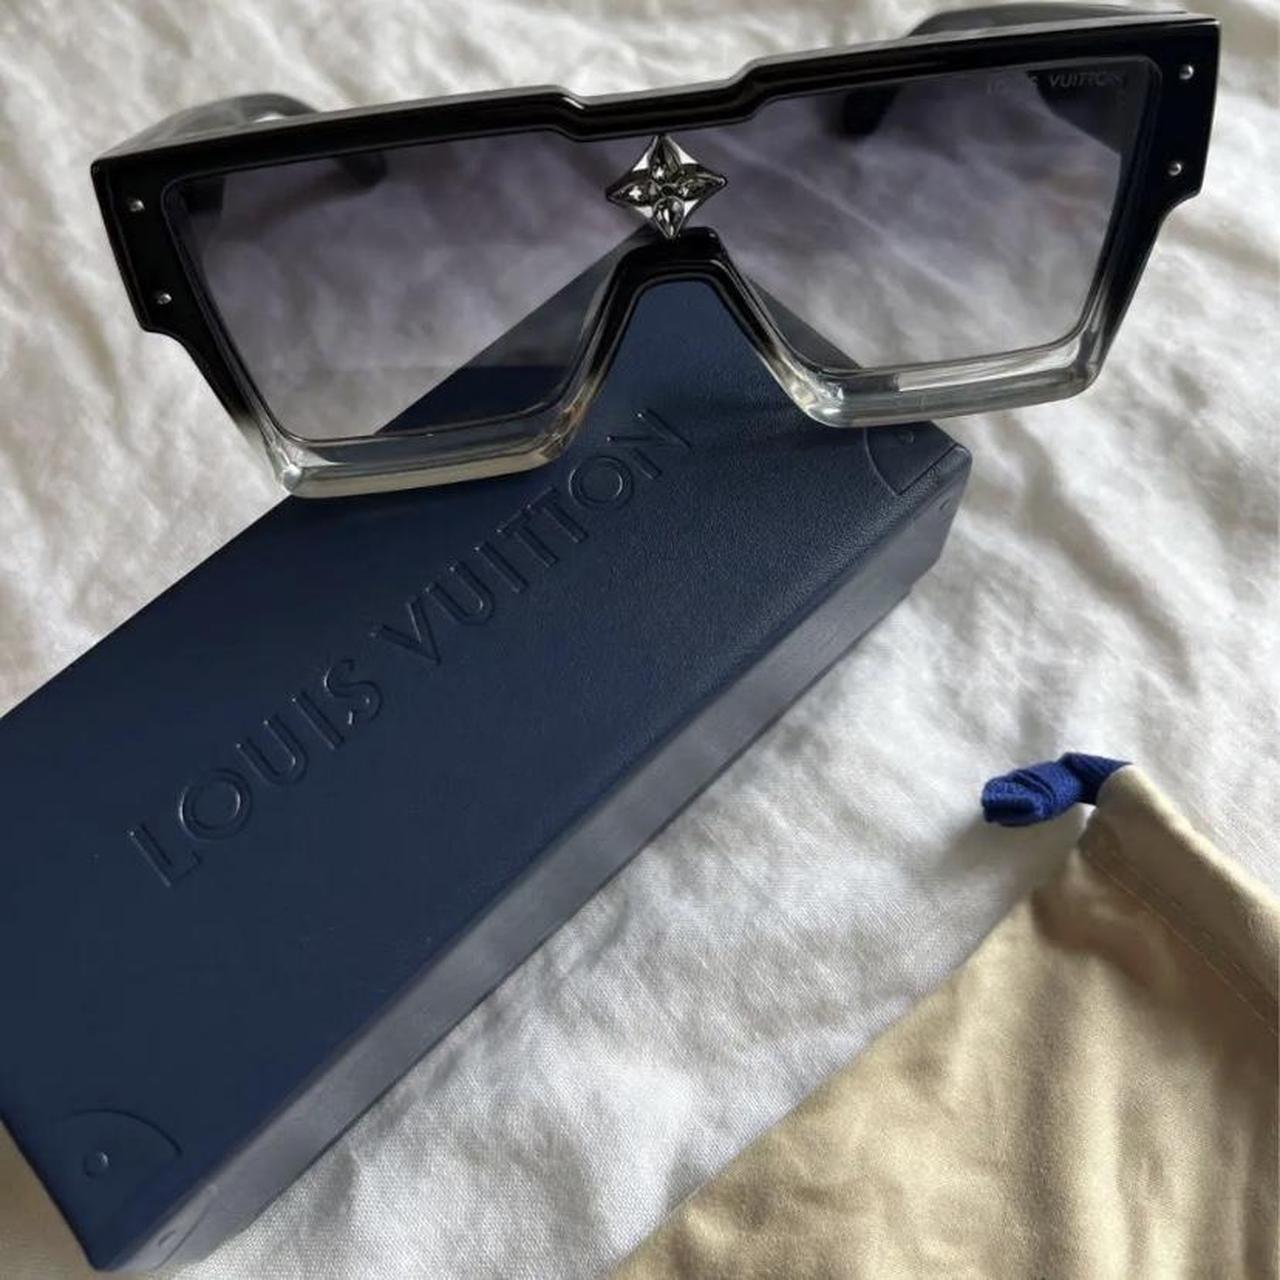 Brand new LV sunglasses 2021. New with original case - Depop